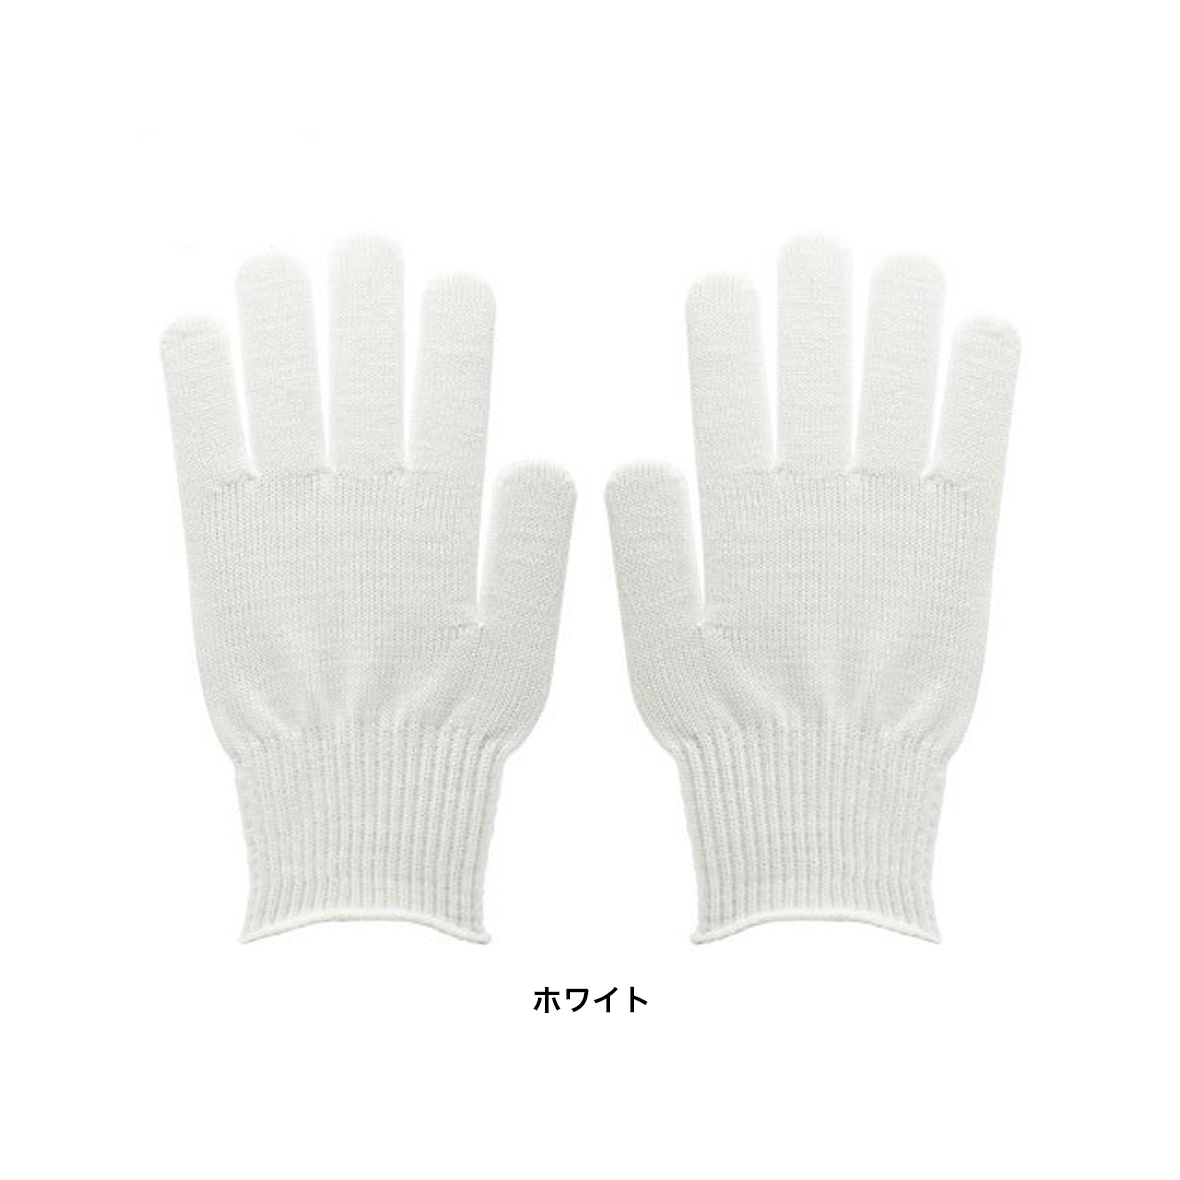 総柄 Work Gloves (品番HW91)